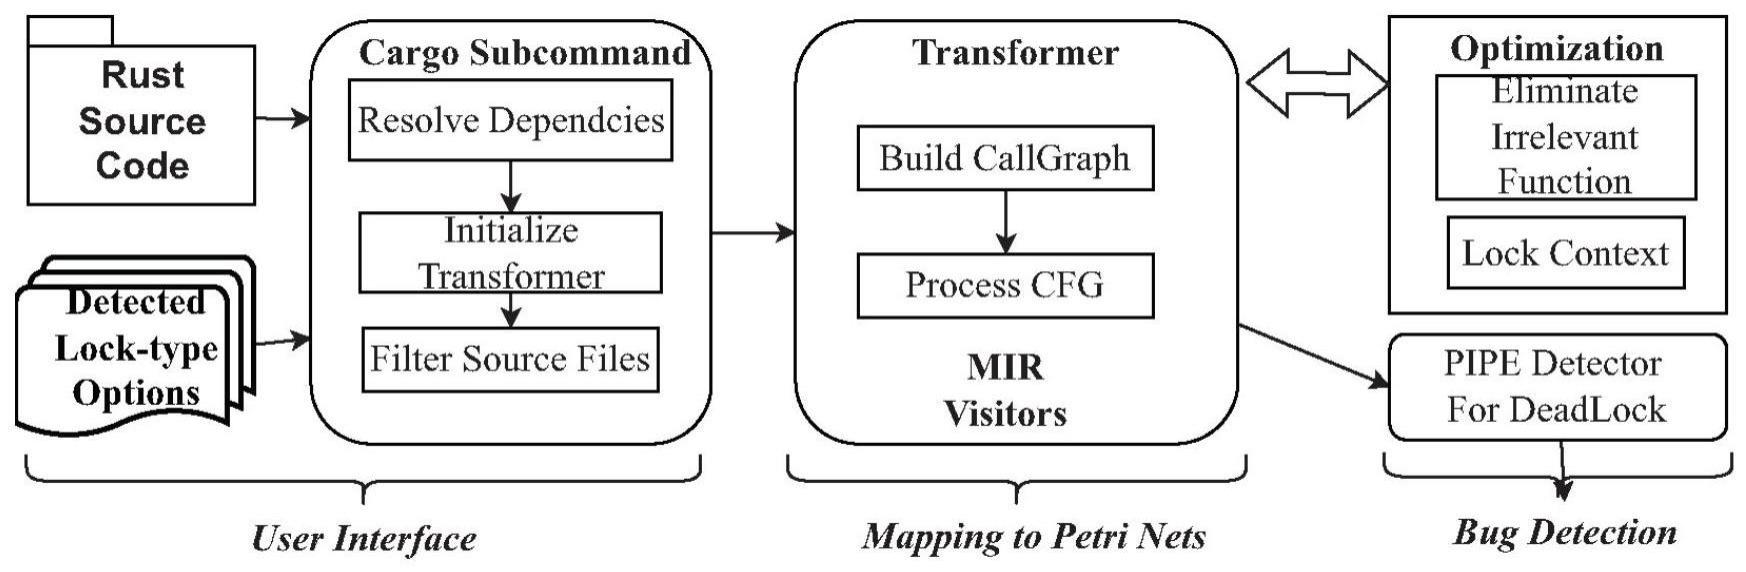 基于Petri网的Rust语言自动建模与死锁检测方法及软件工具